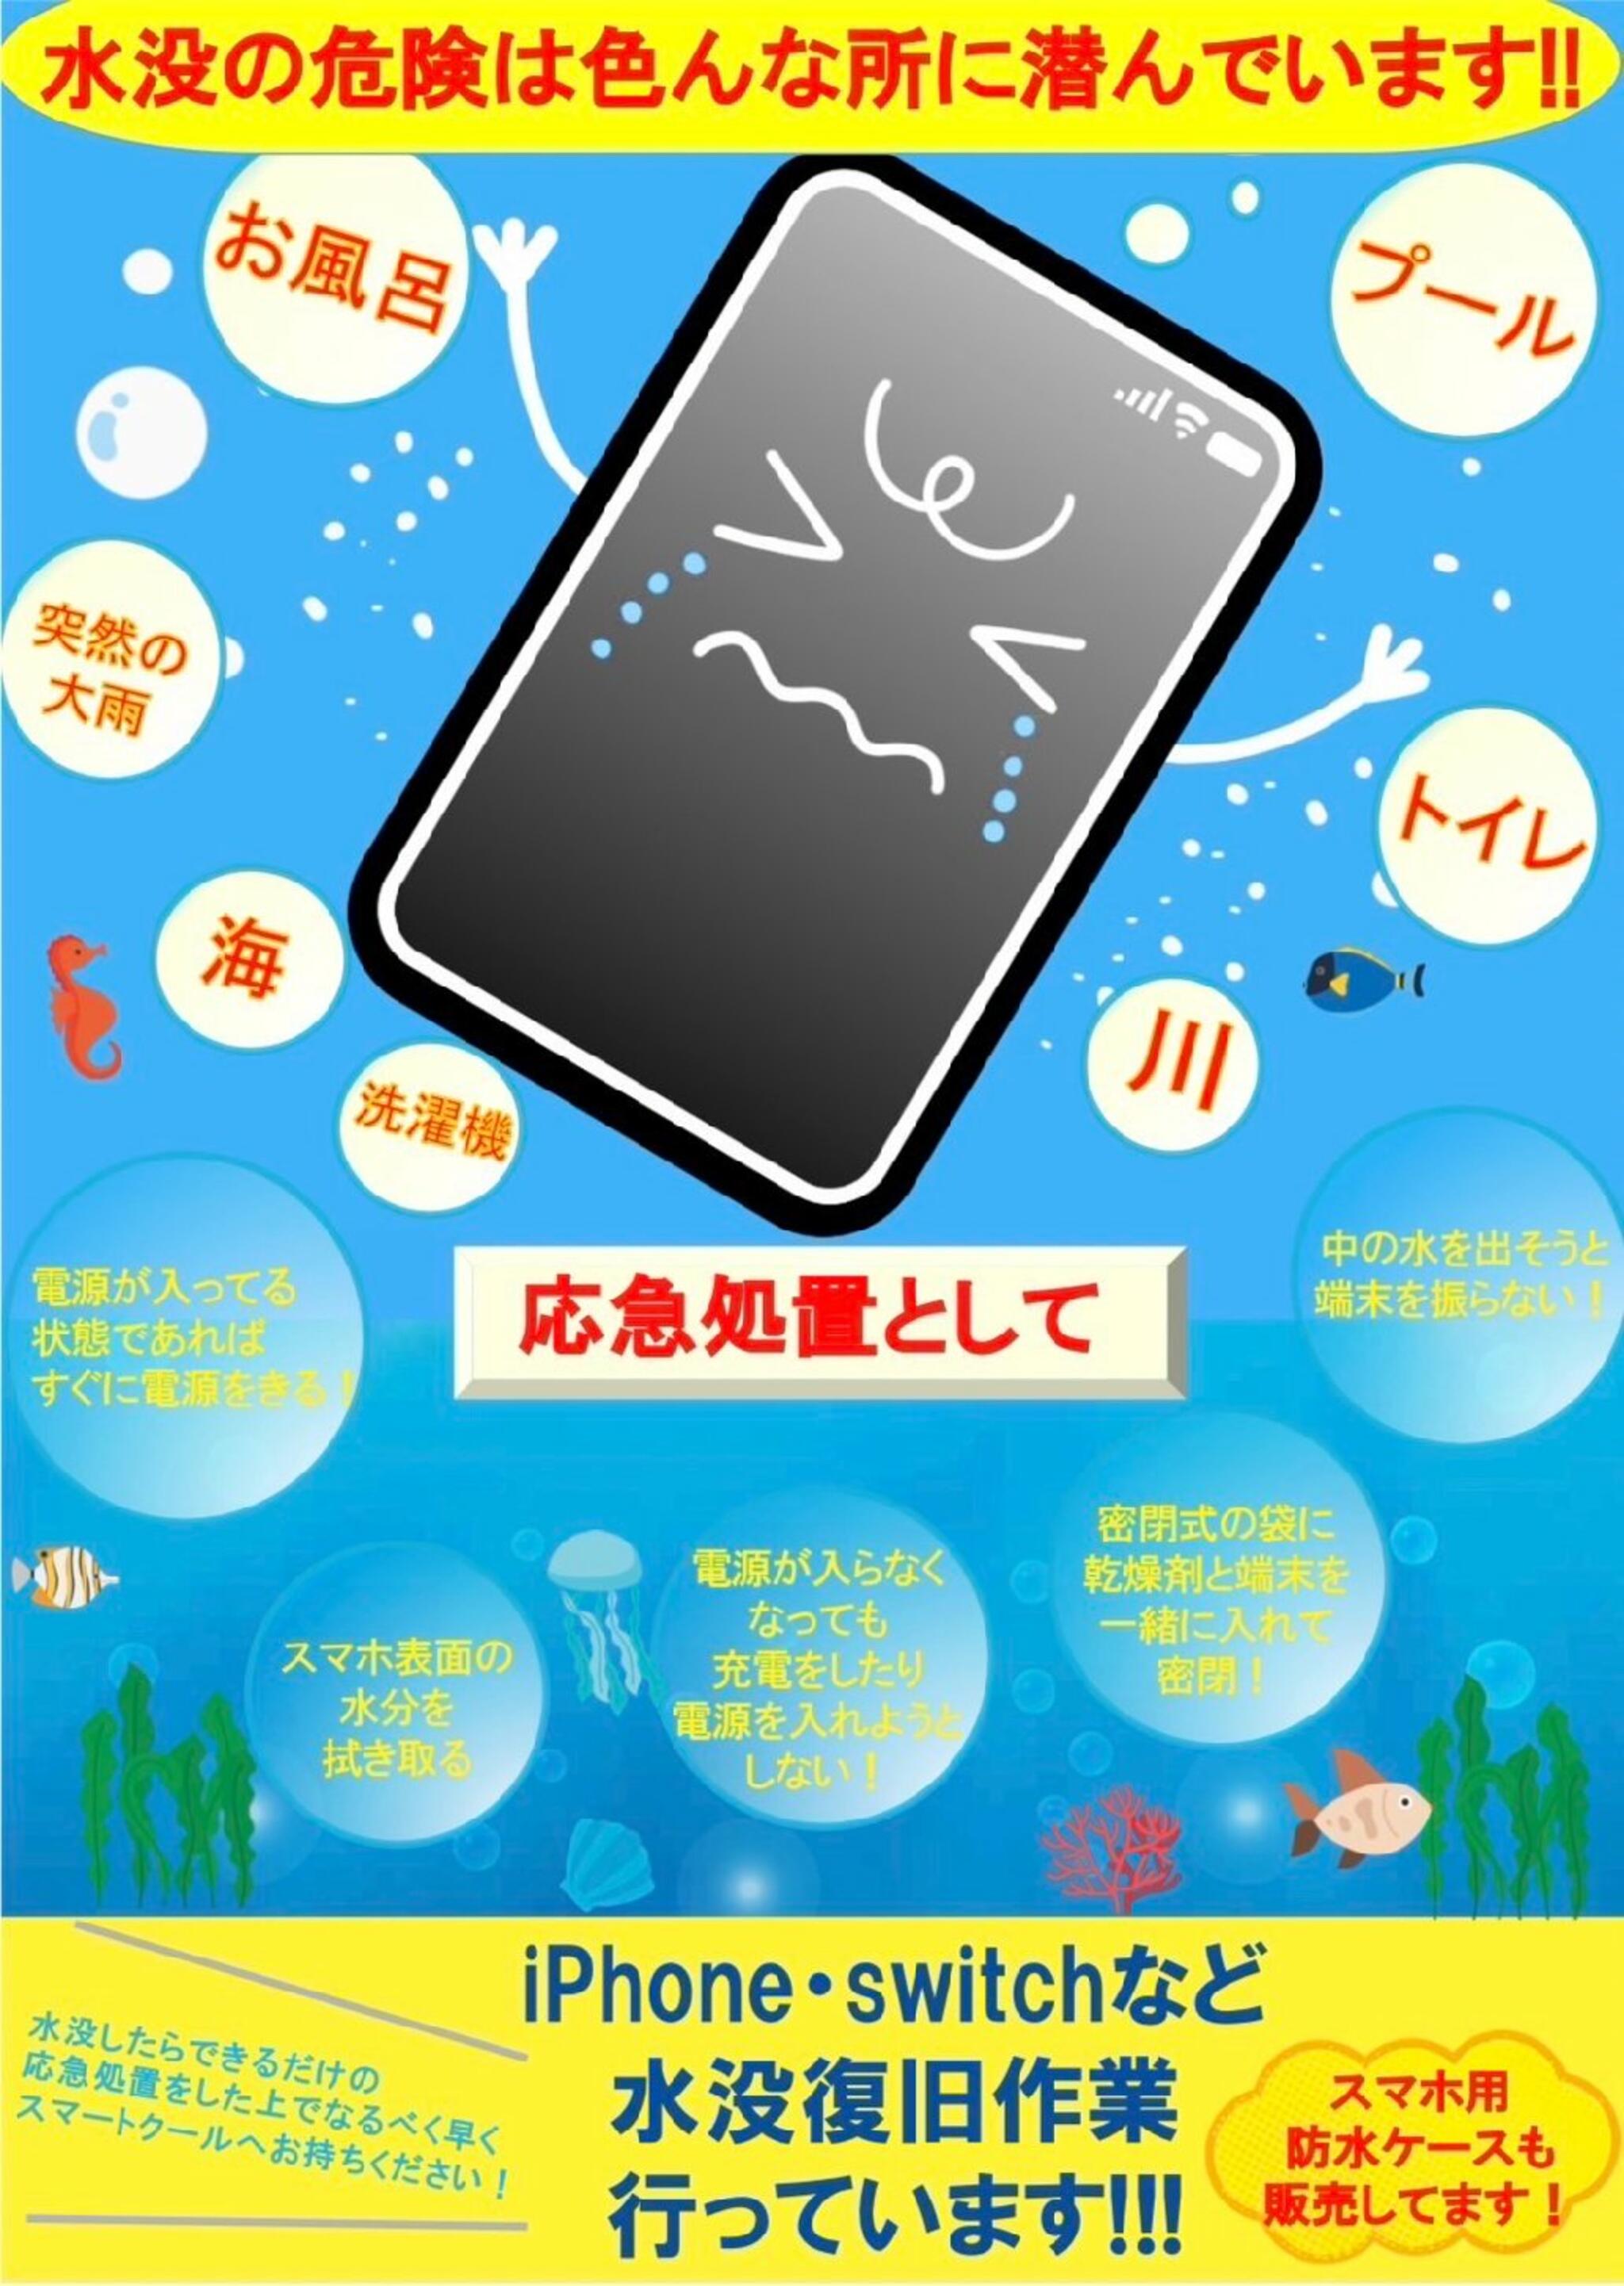 iPhone・iPad・Switch修理店 スマートクール イオンモール広島祇園店からのお知らせ(水没 にはご注意を！)に関する写真